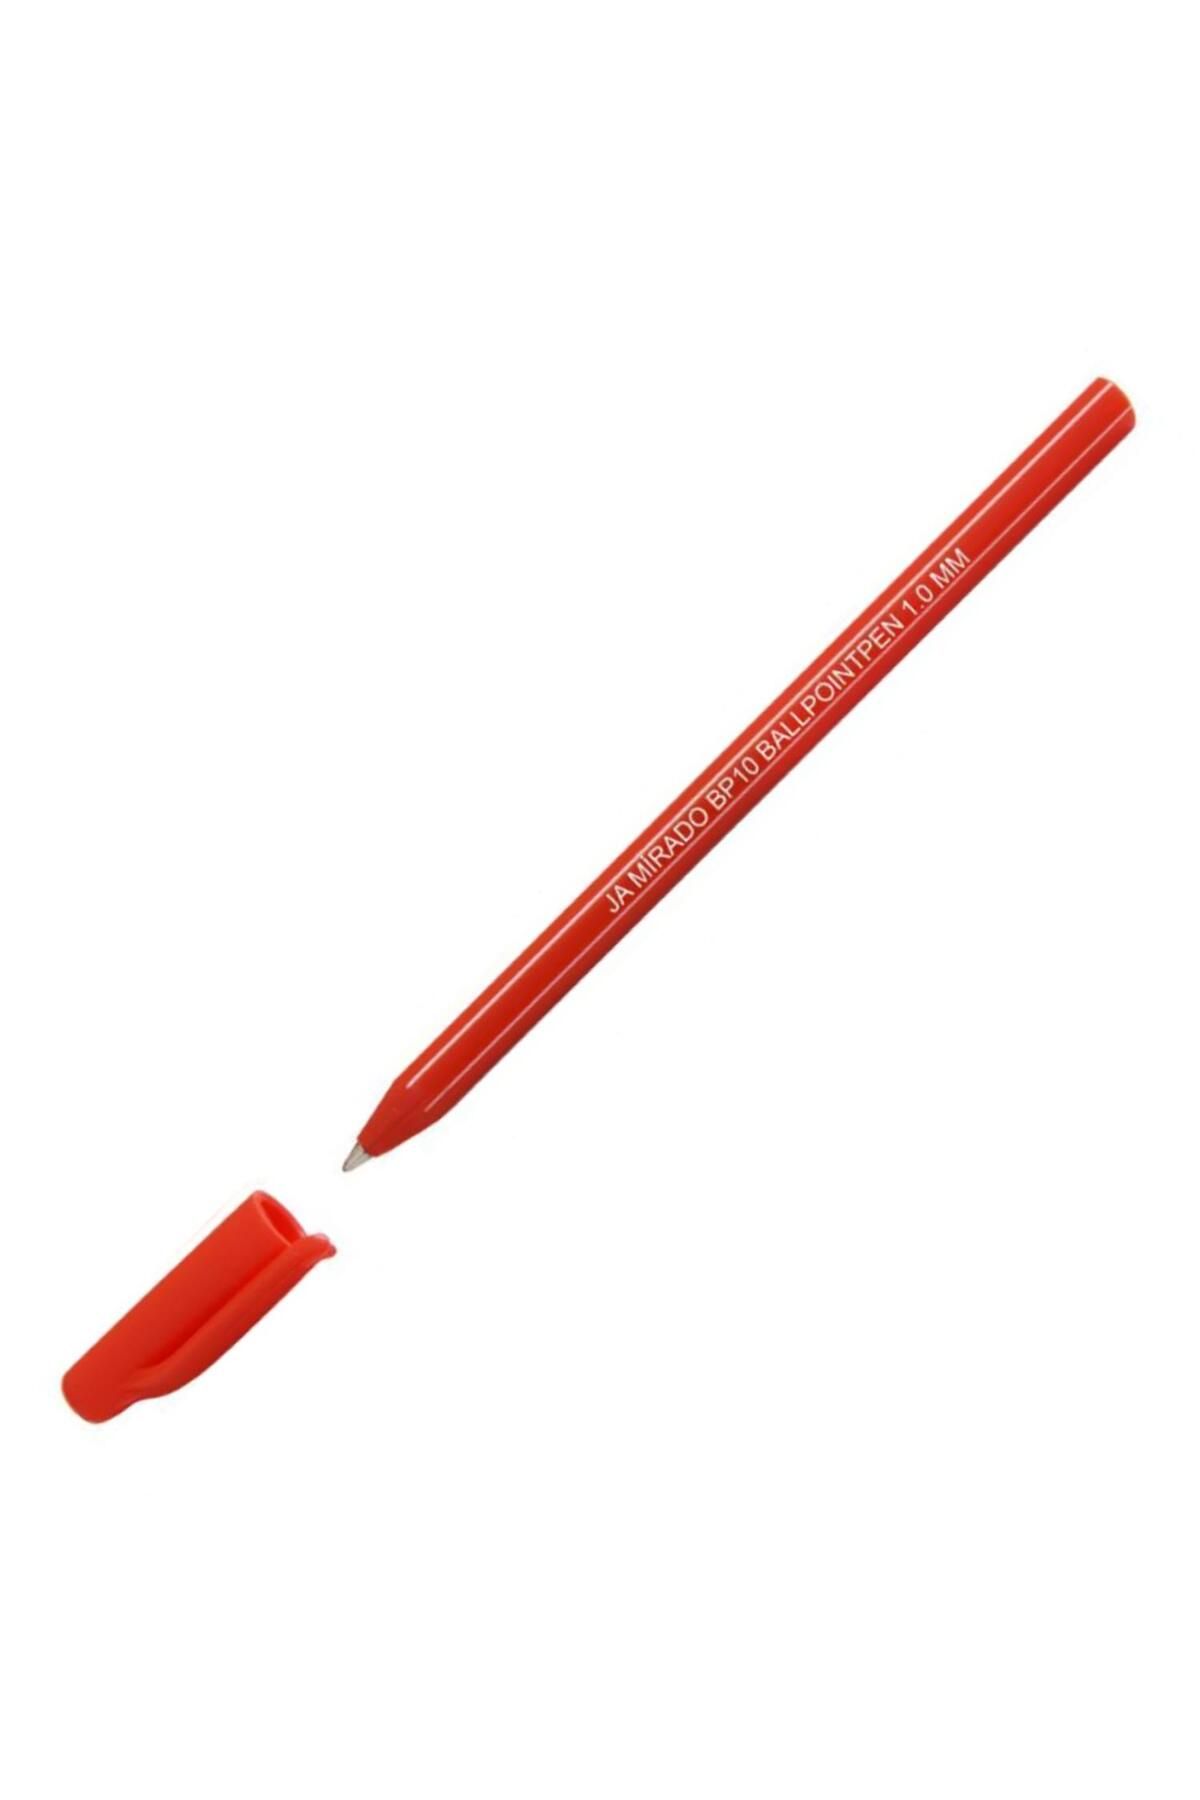 Jamirado Tükenmez Kalem 1.0 mm Kırmızı BP10